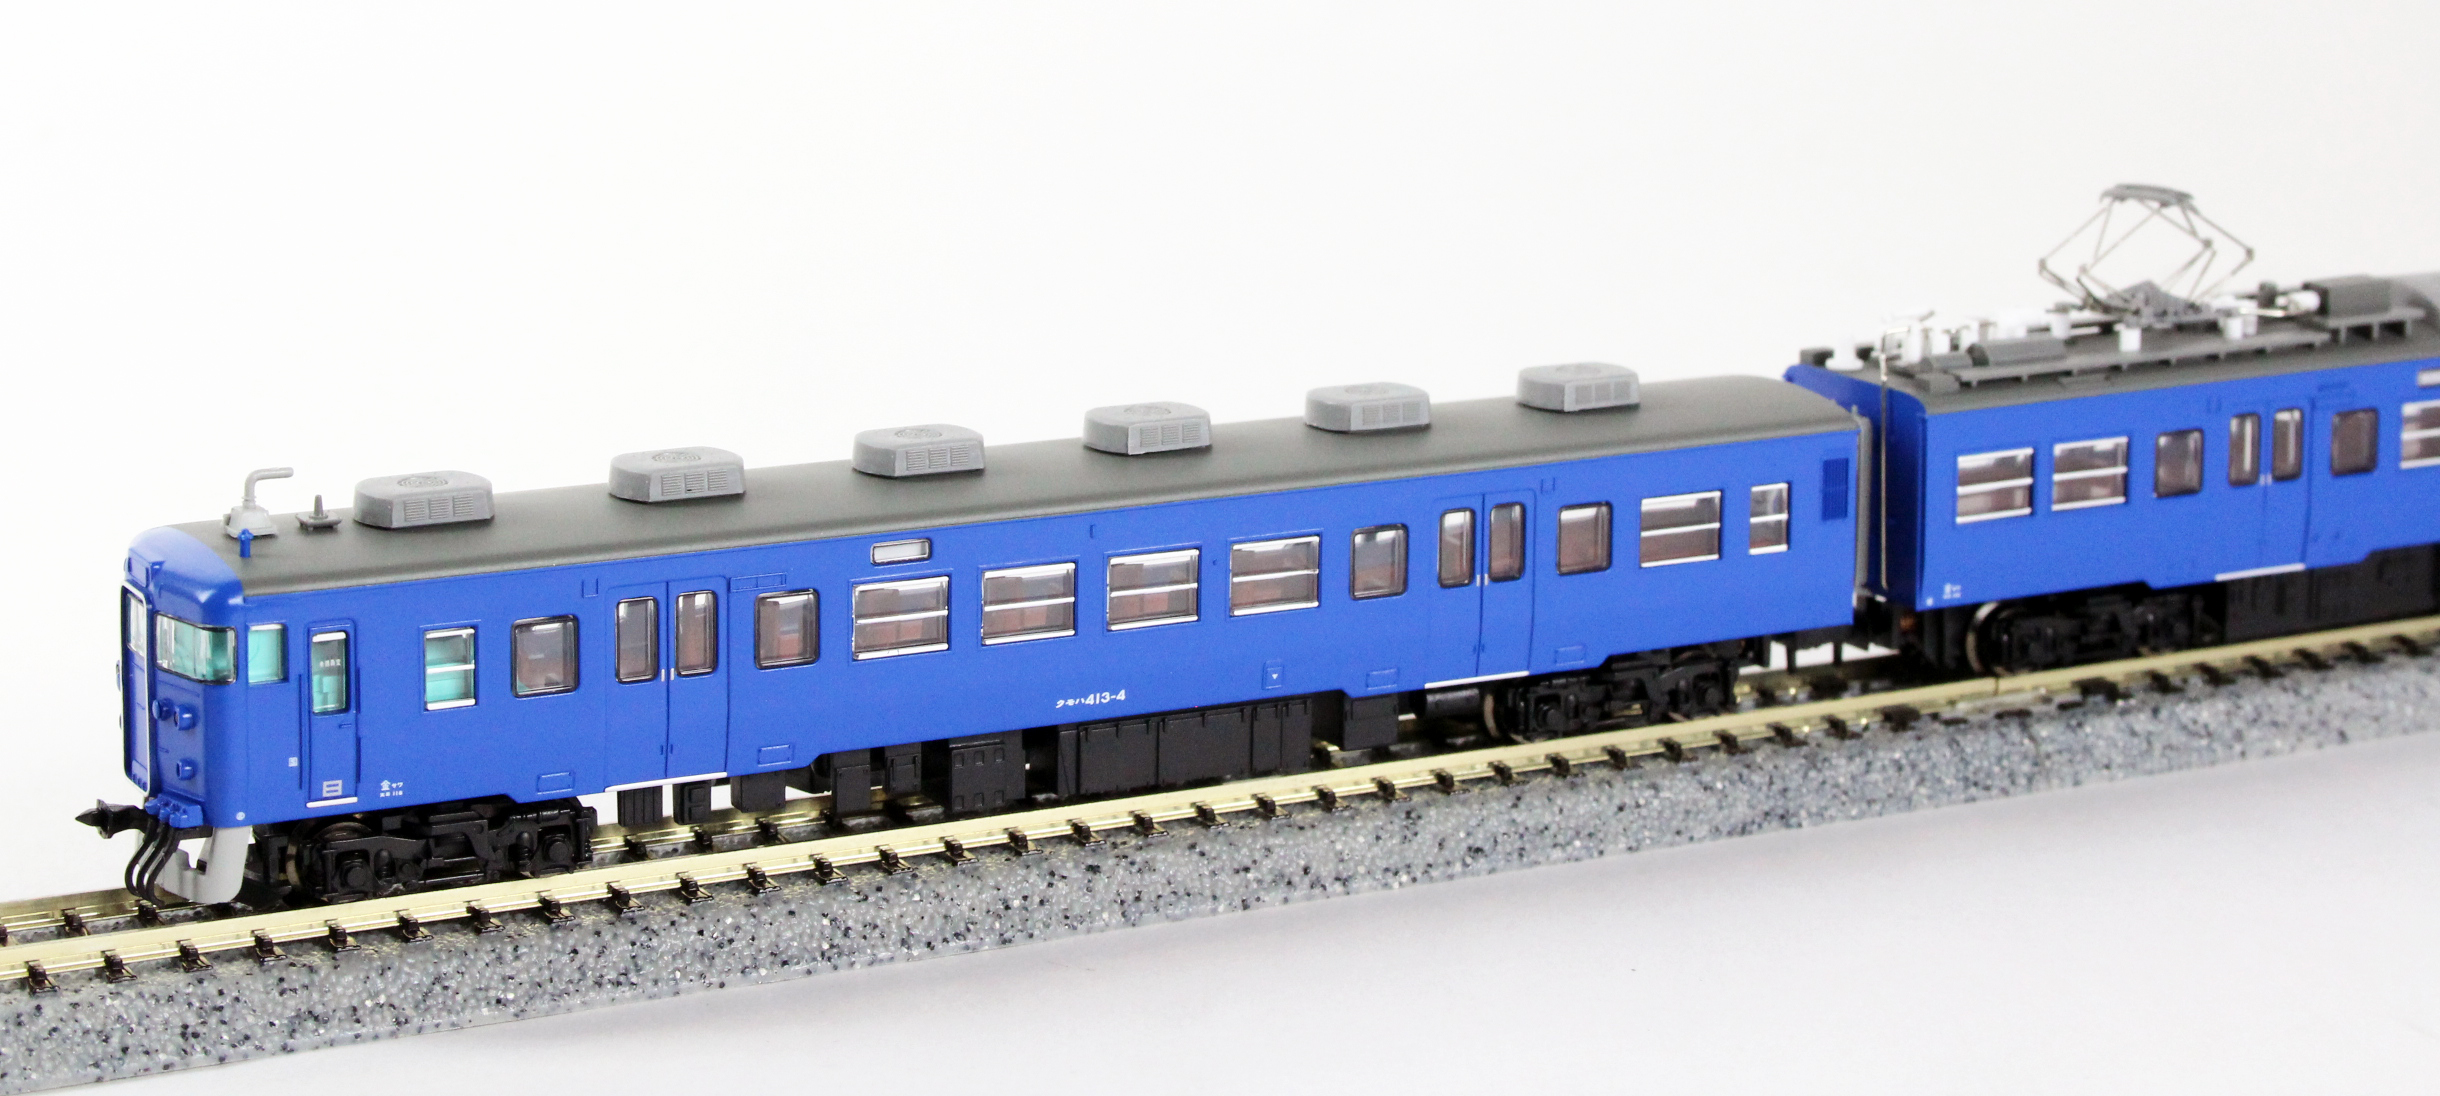 マイクロエース A0048 クハ455-700+413系・青 3両セット 鉄道模型 N 